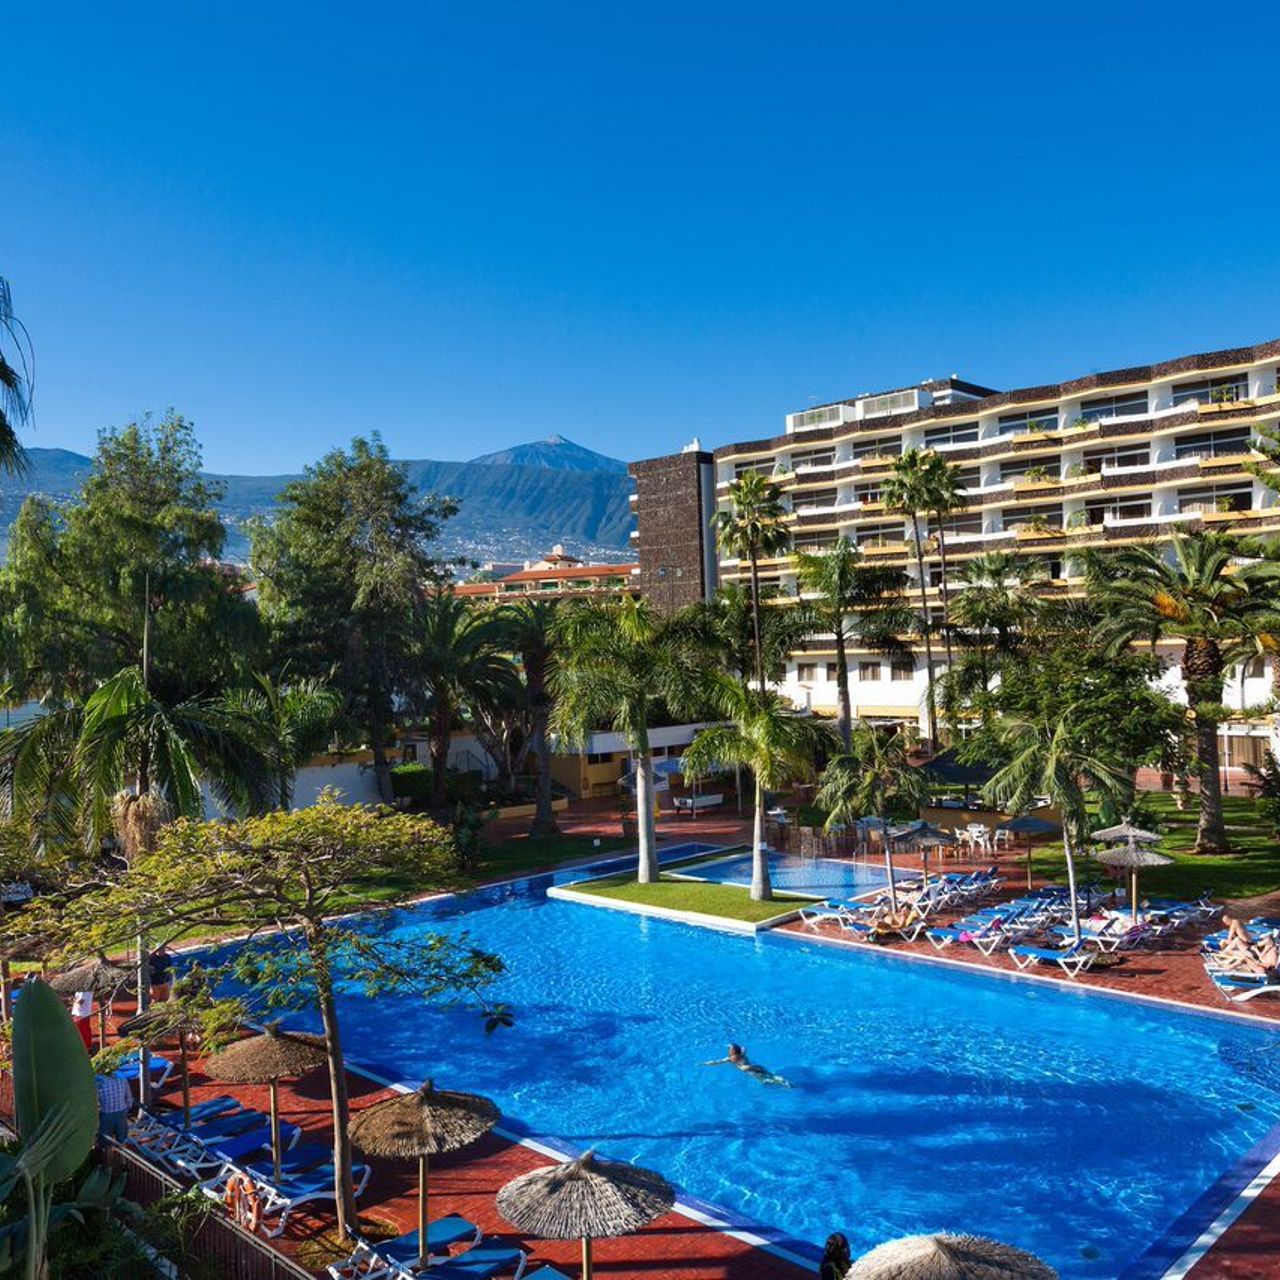 Hotel Blue Sea Puerto Resort - Puerto de la Cruz - HOTEL INFO